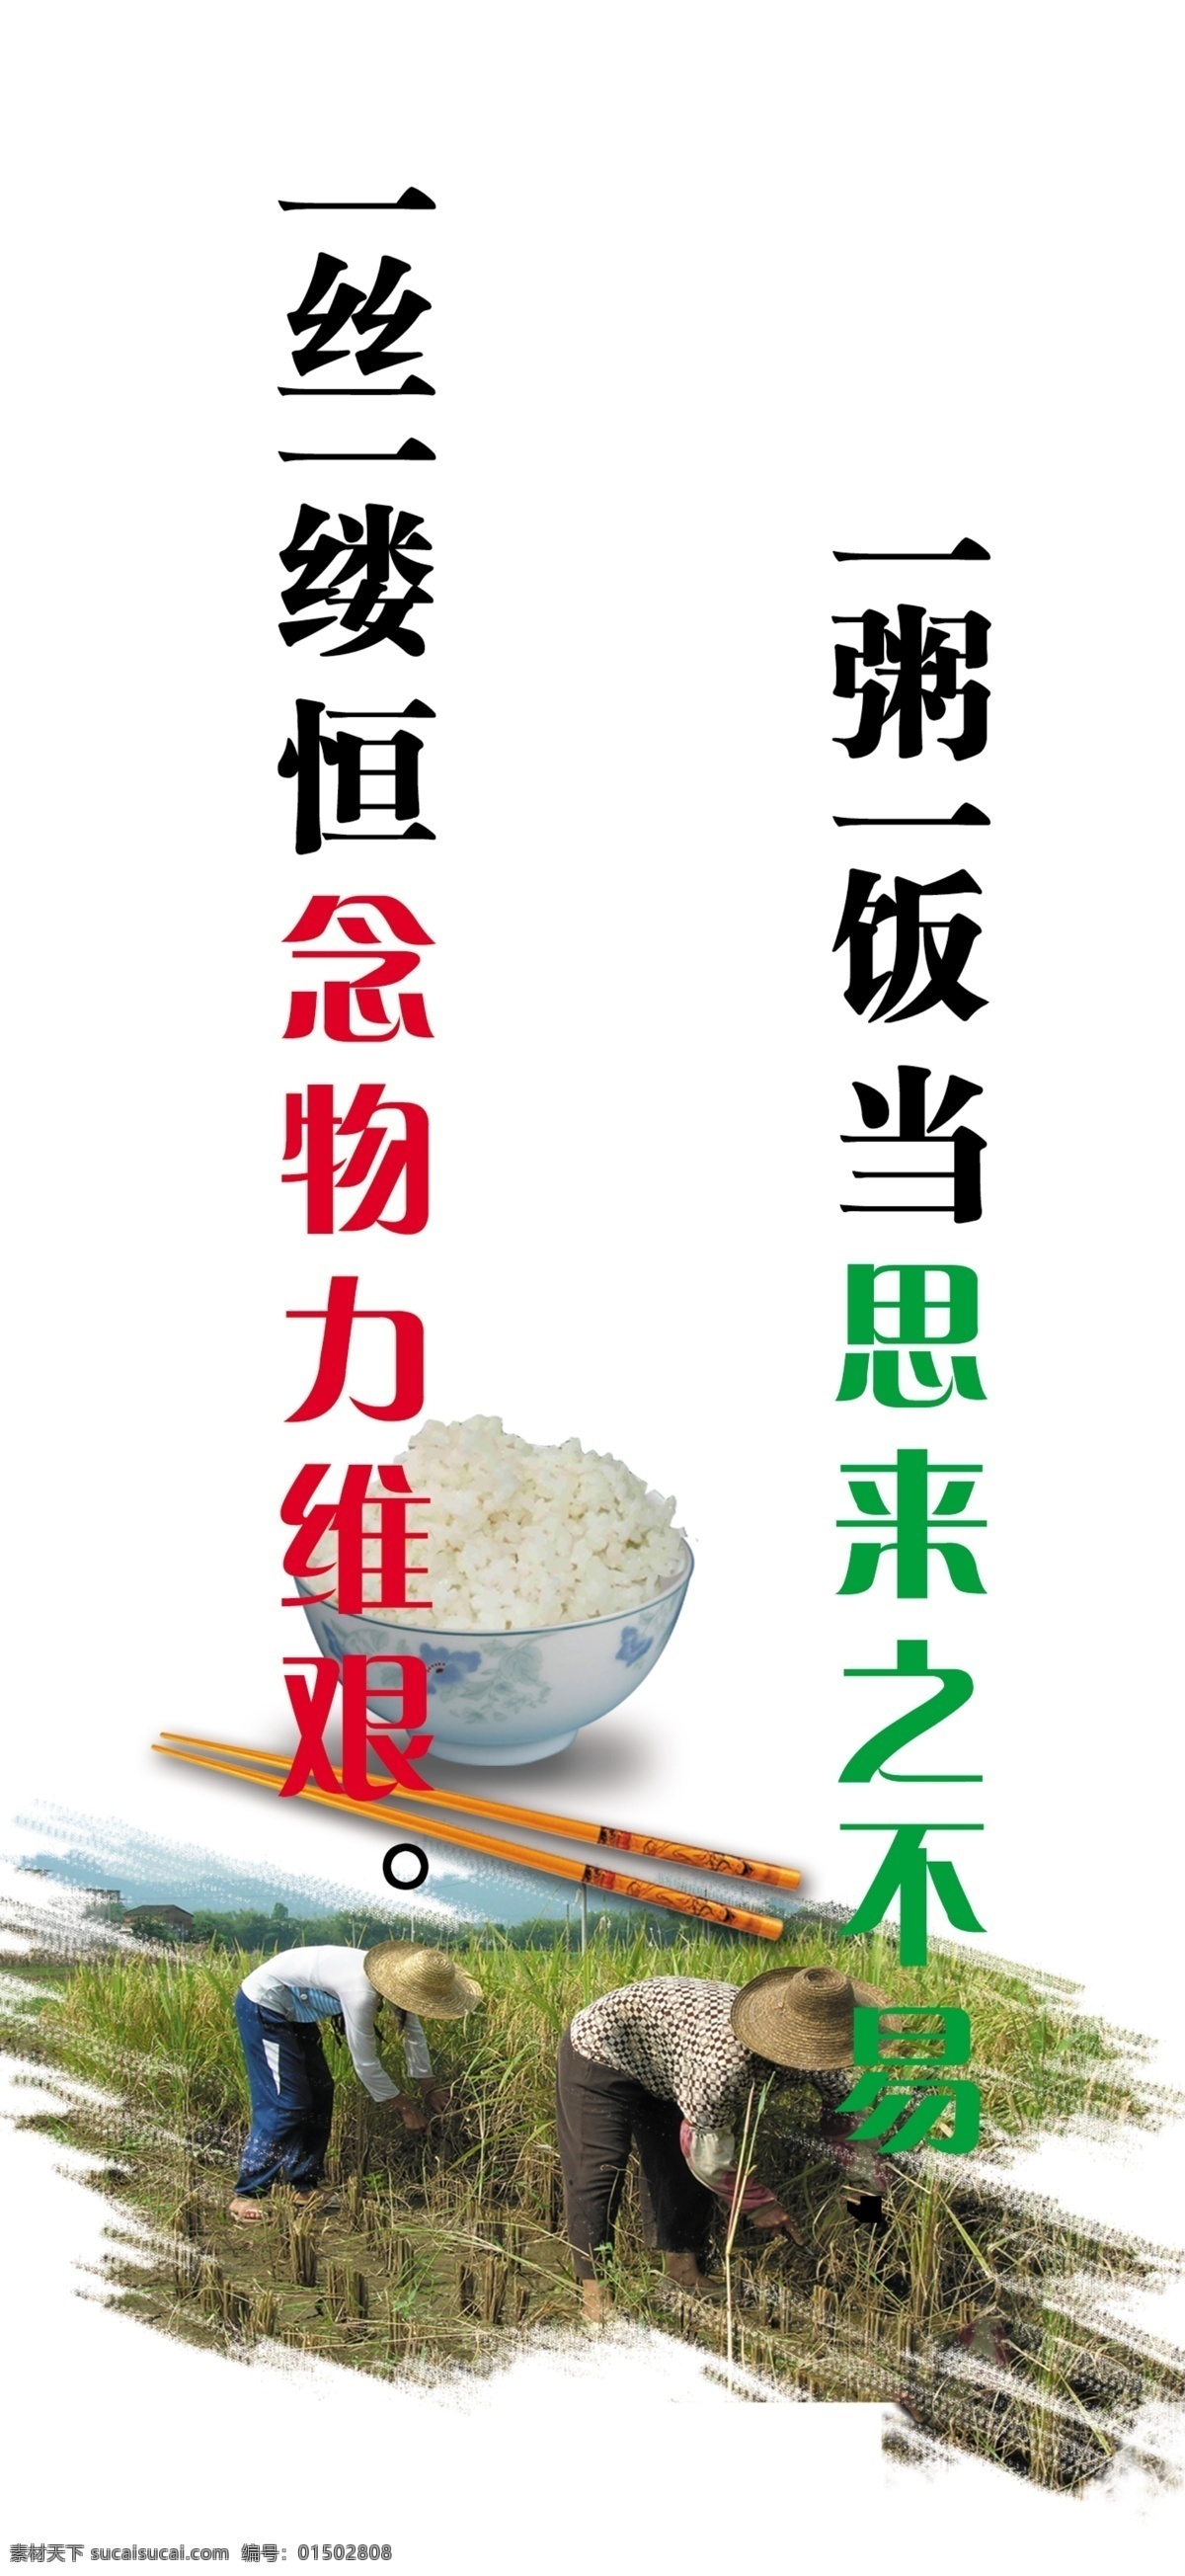 粮食 标语 粥 饭 思 来之不易 一丝 缕 恒 念 物力 维持 米饭 筷子 人物 割稻子 熟稻子 分层 源文件